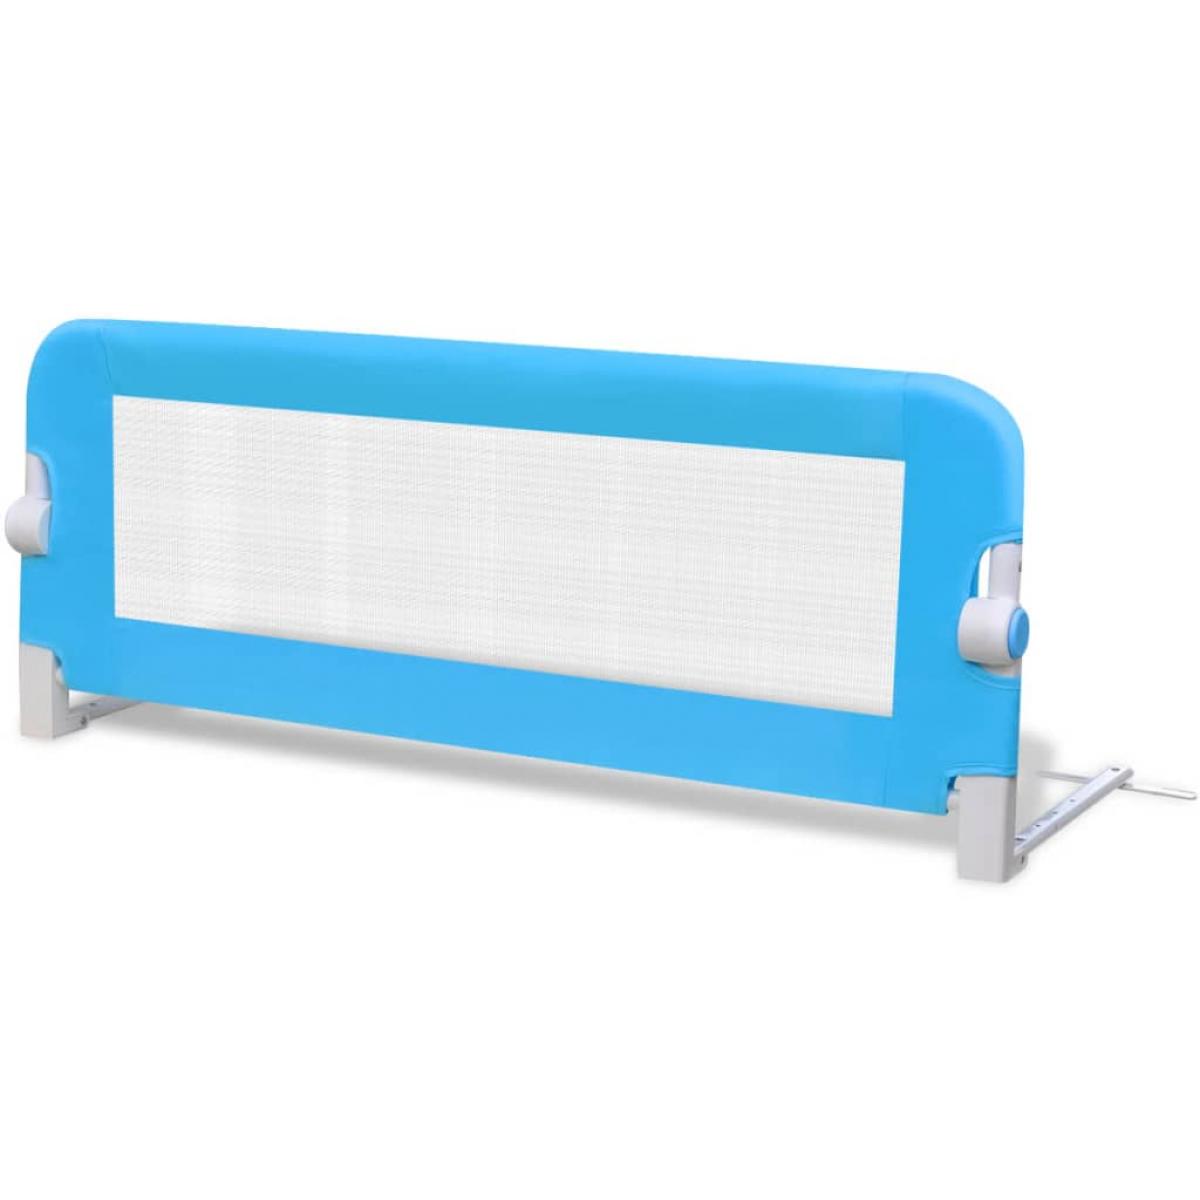 Barandilla de seguridad cama de niño 102x42 cm azul